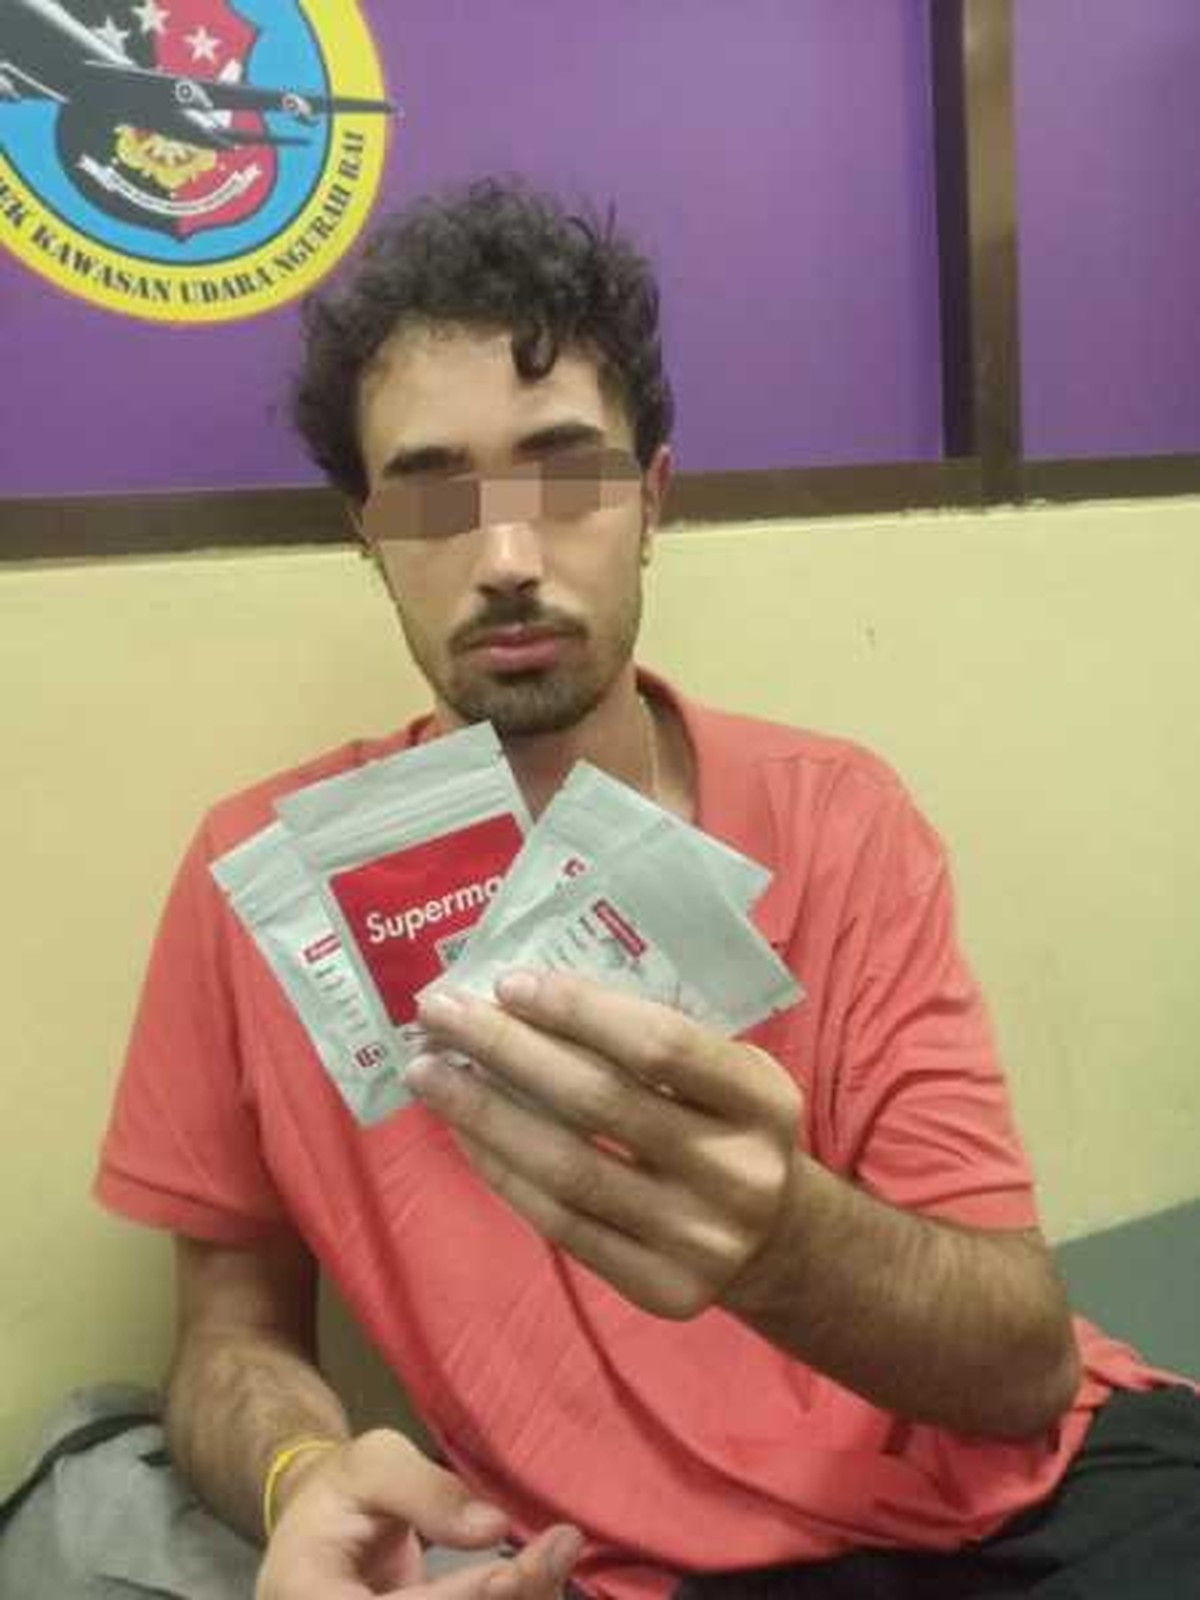 Brasileiro é preso em Bali, na Indonésia, por posse de 9 gramas de maconha | Mundo